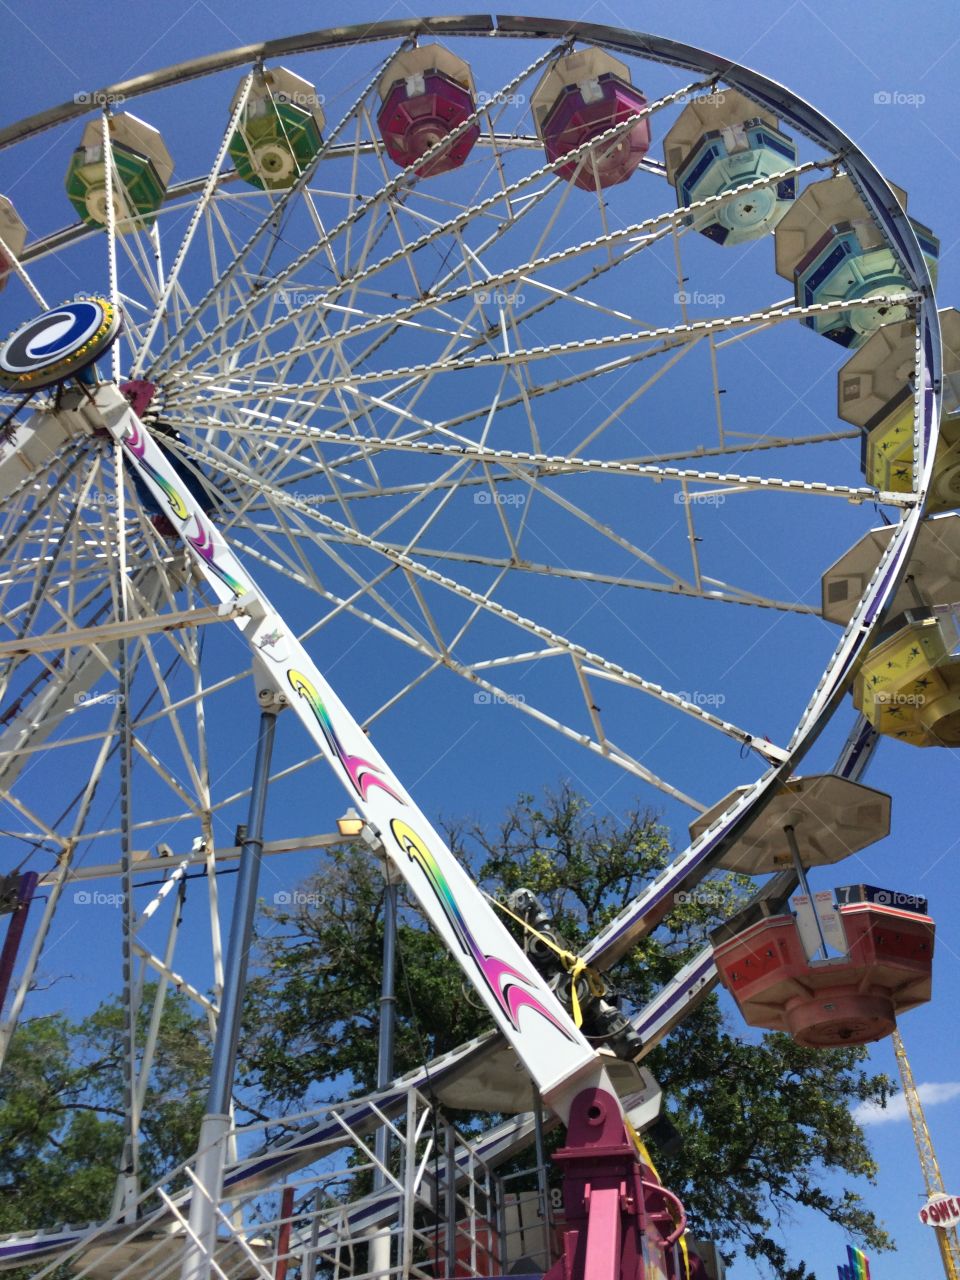 Ferris Wheel. At the fair